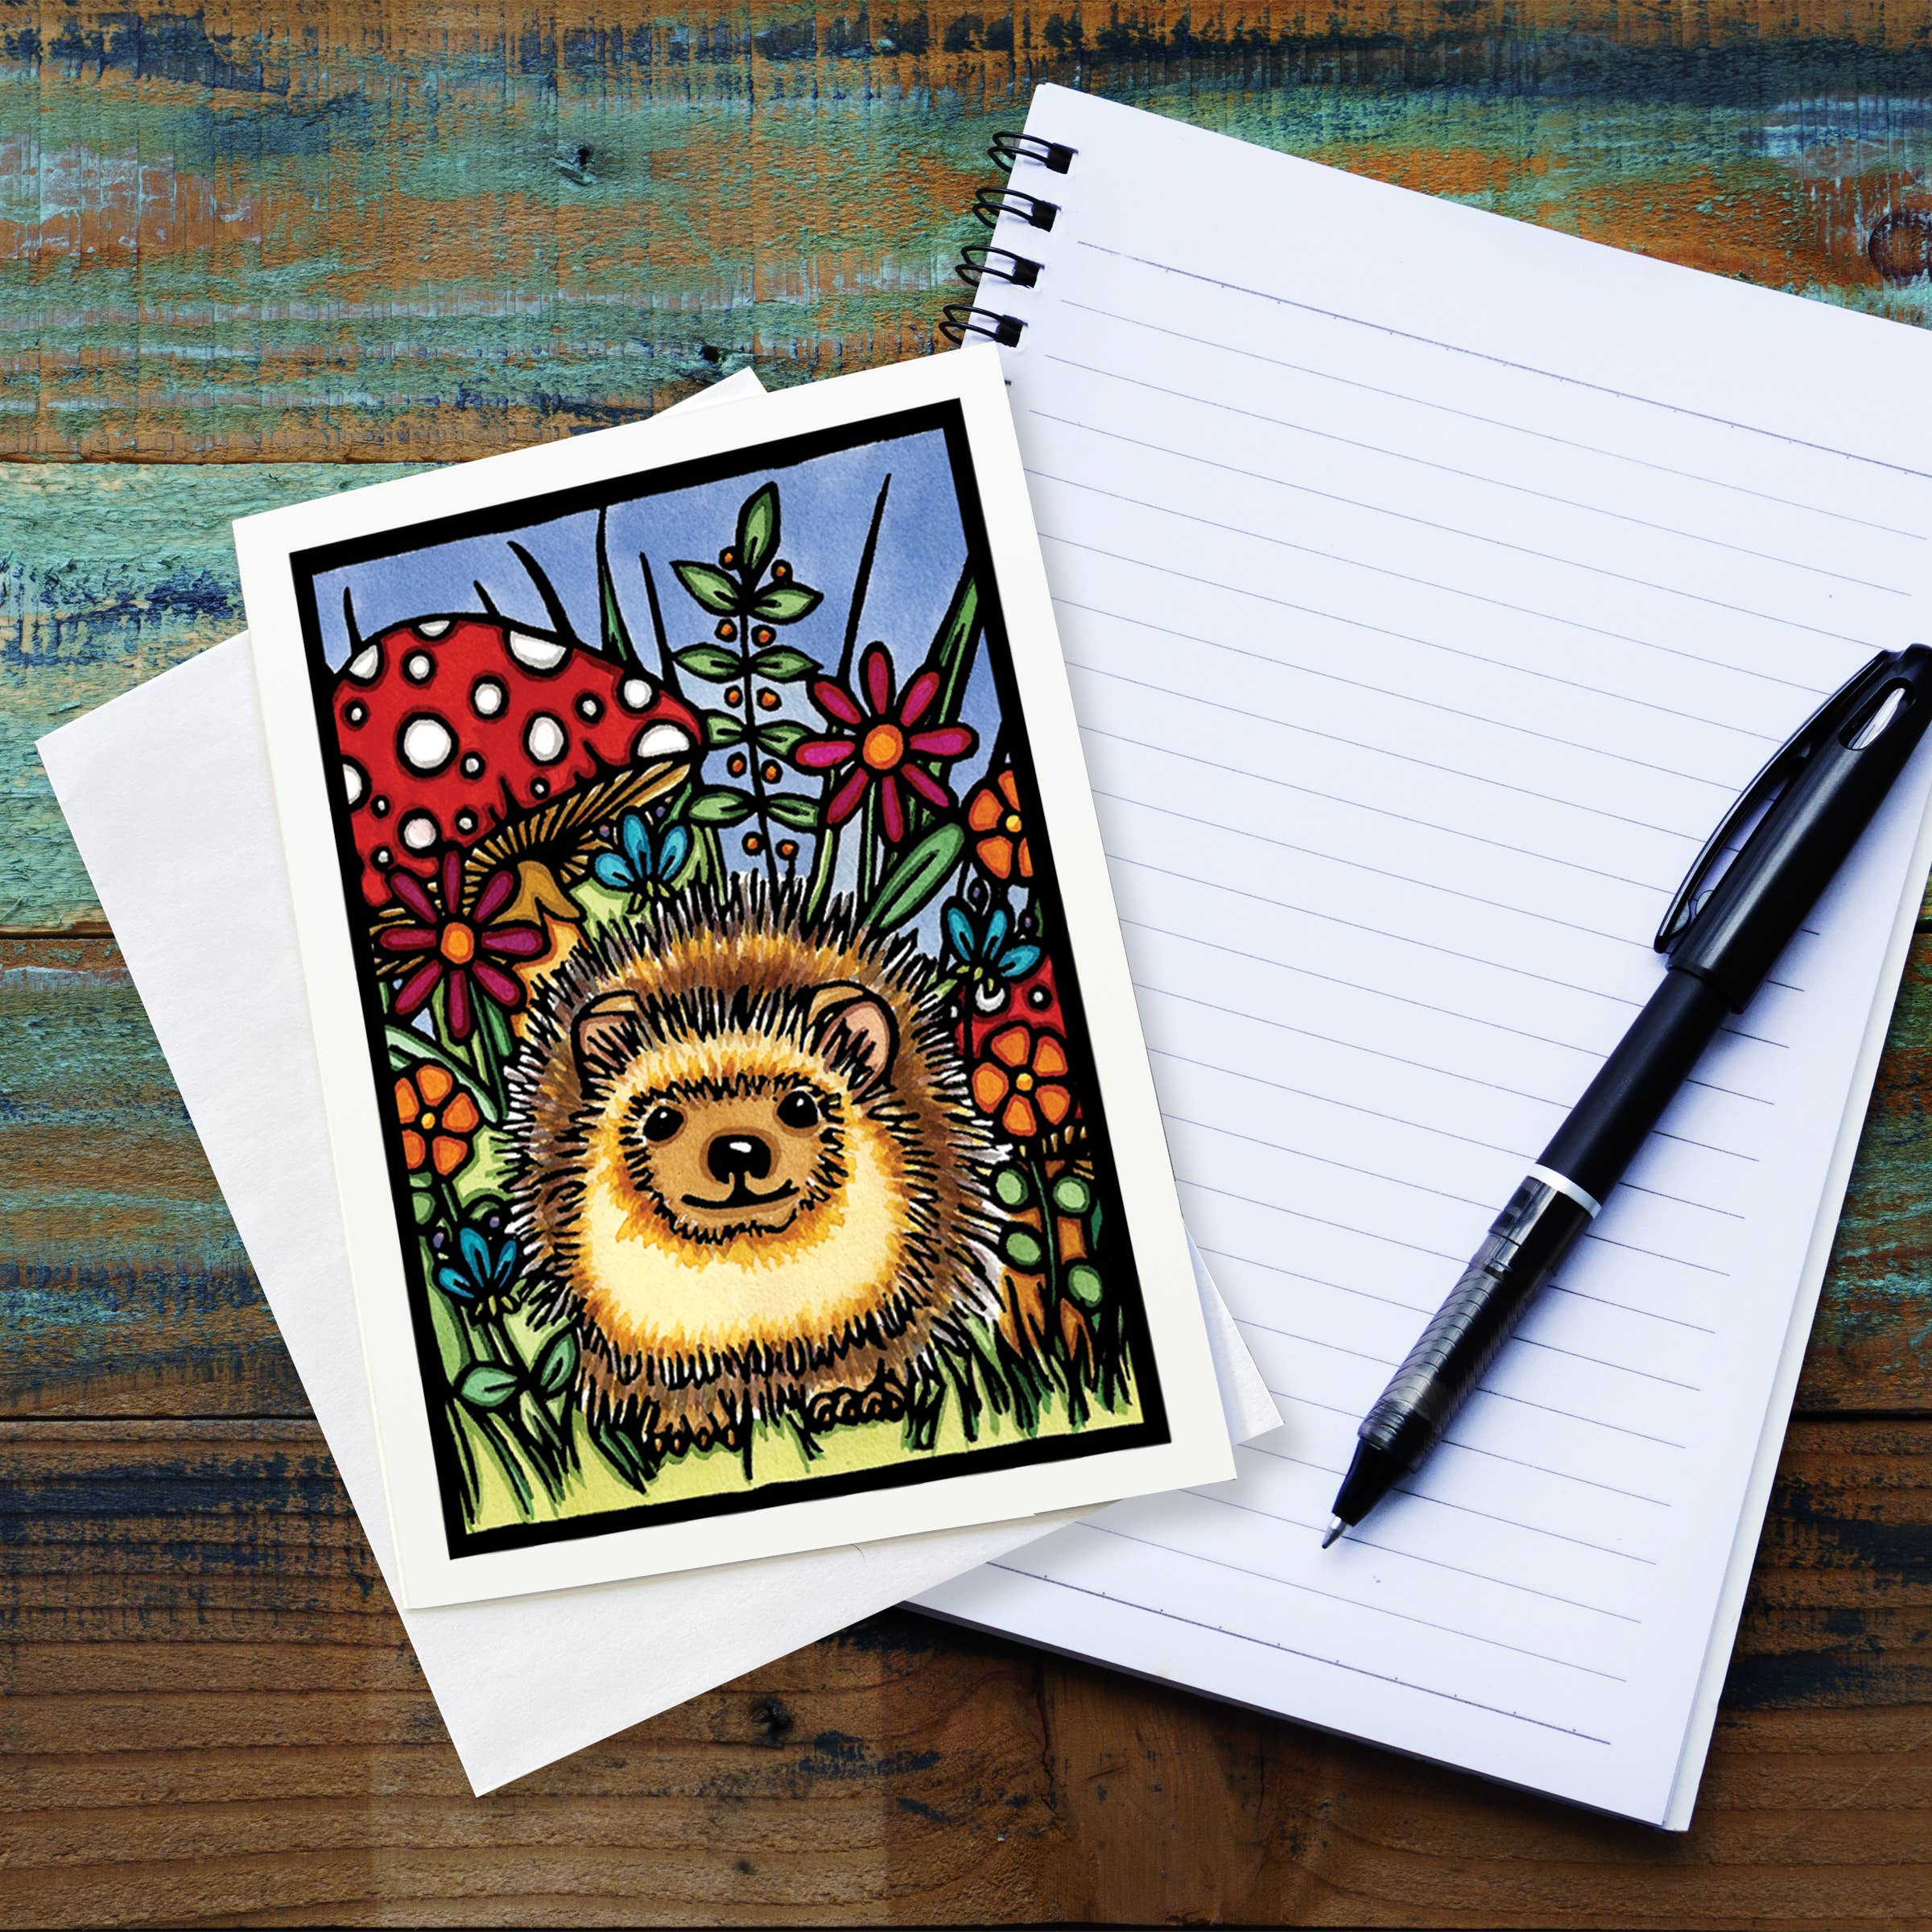 Greeting Card: Hedgehog by Sarah Angst